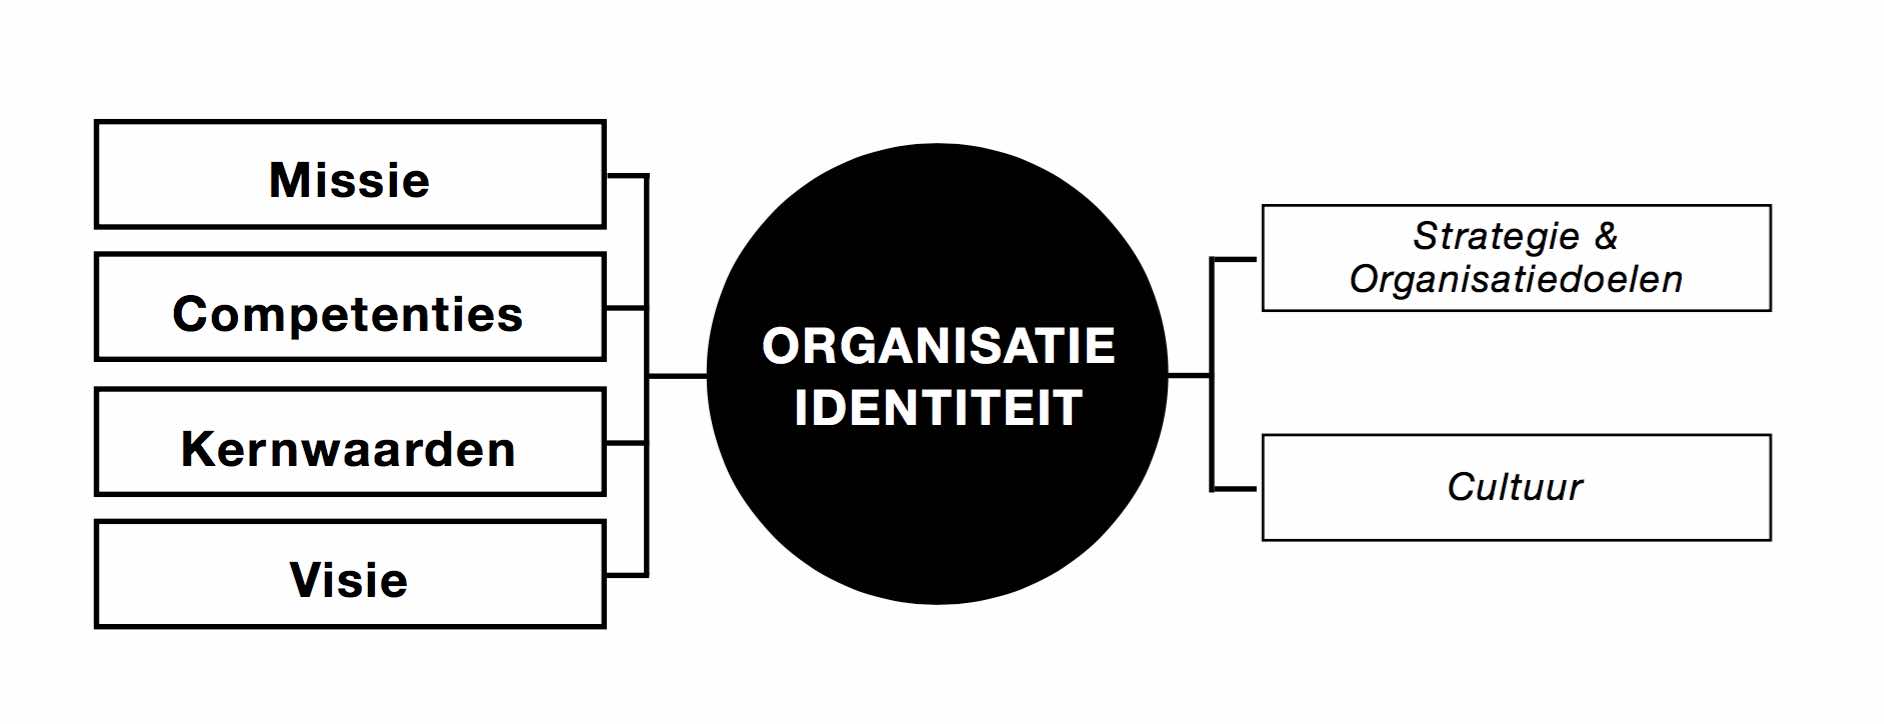 bekijk het model voor organisatie-identiteit